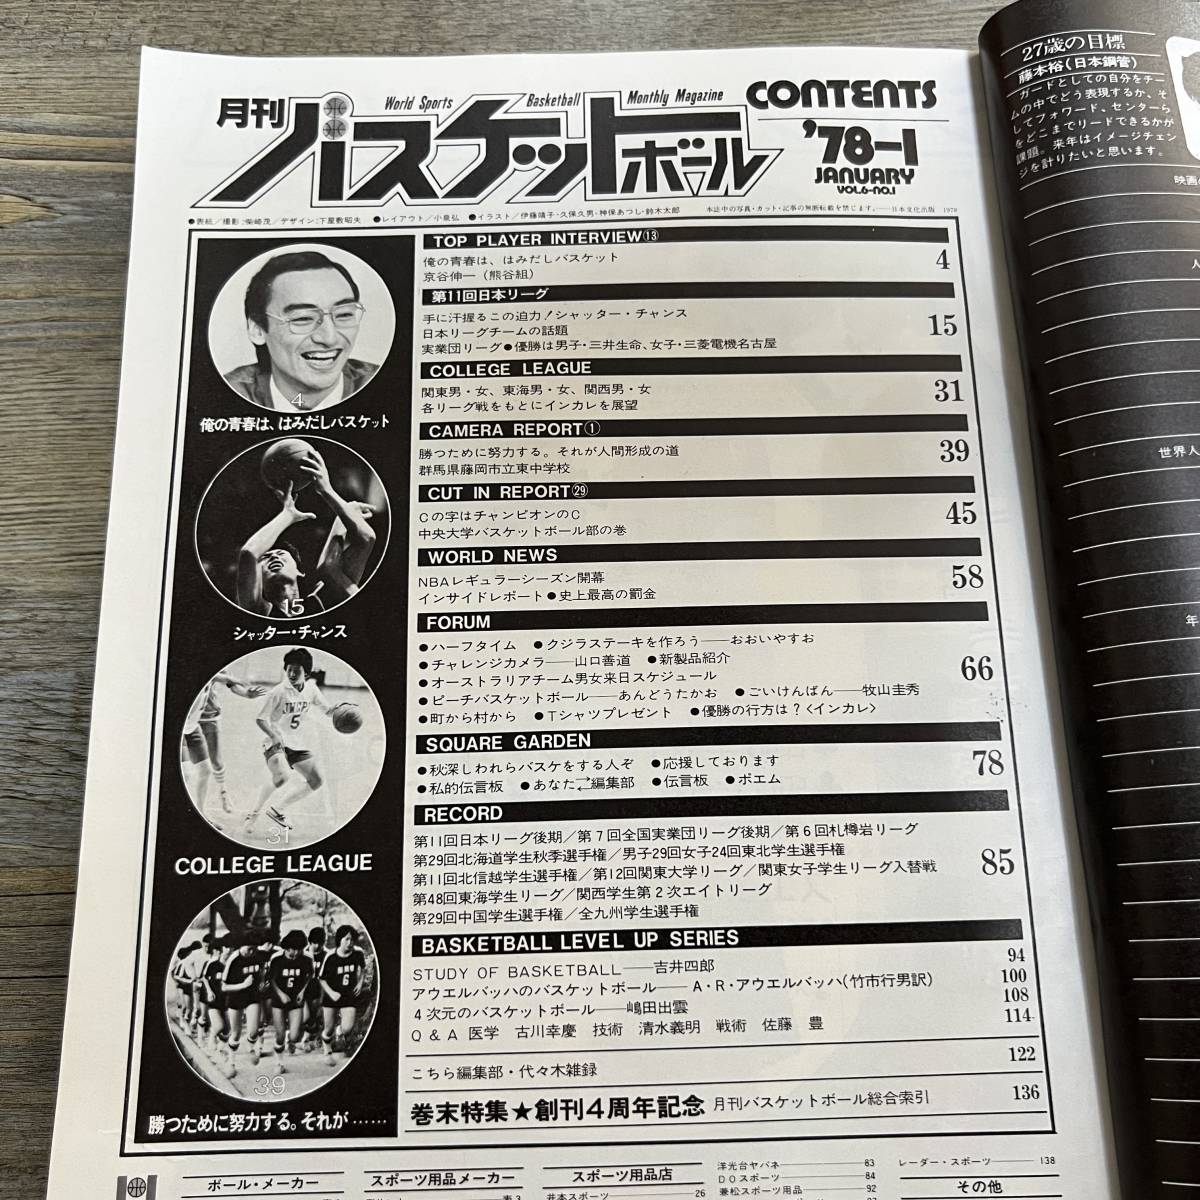 S-3145# ежемесячный баскетбол 1978 год 1 месяц номер # no. 11 раз Япония Lee g столица .. один # день текст . выпускать # Showa 53 год 1 месяц 25 день выпуск #